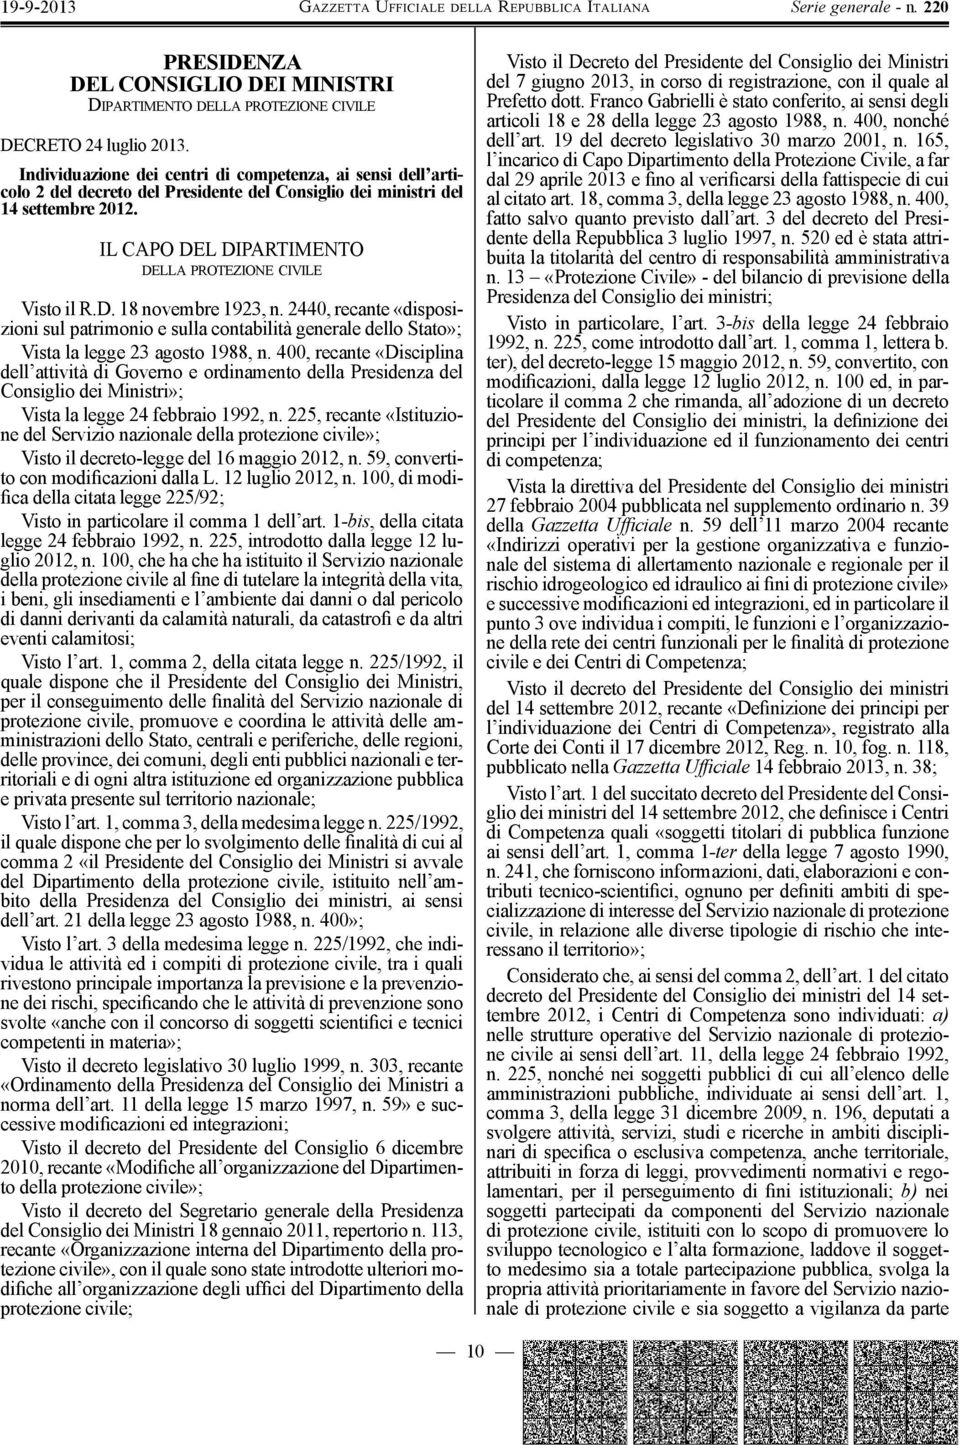 IL CAPO DEL DIPARTIMENTO DELLA PROTEZIONE CIVILE Visto il R.D. 18 novembre 1923, n.